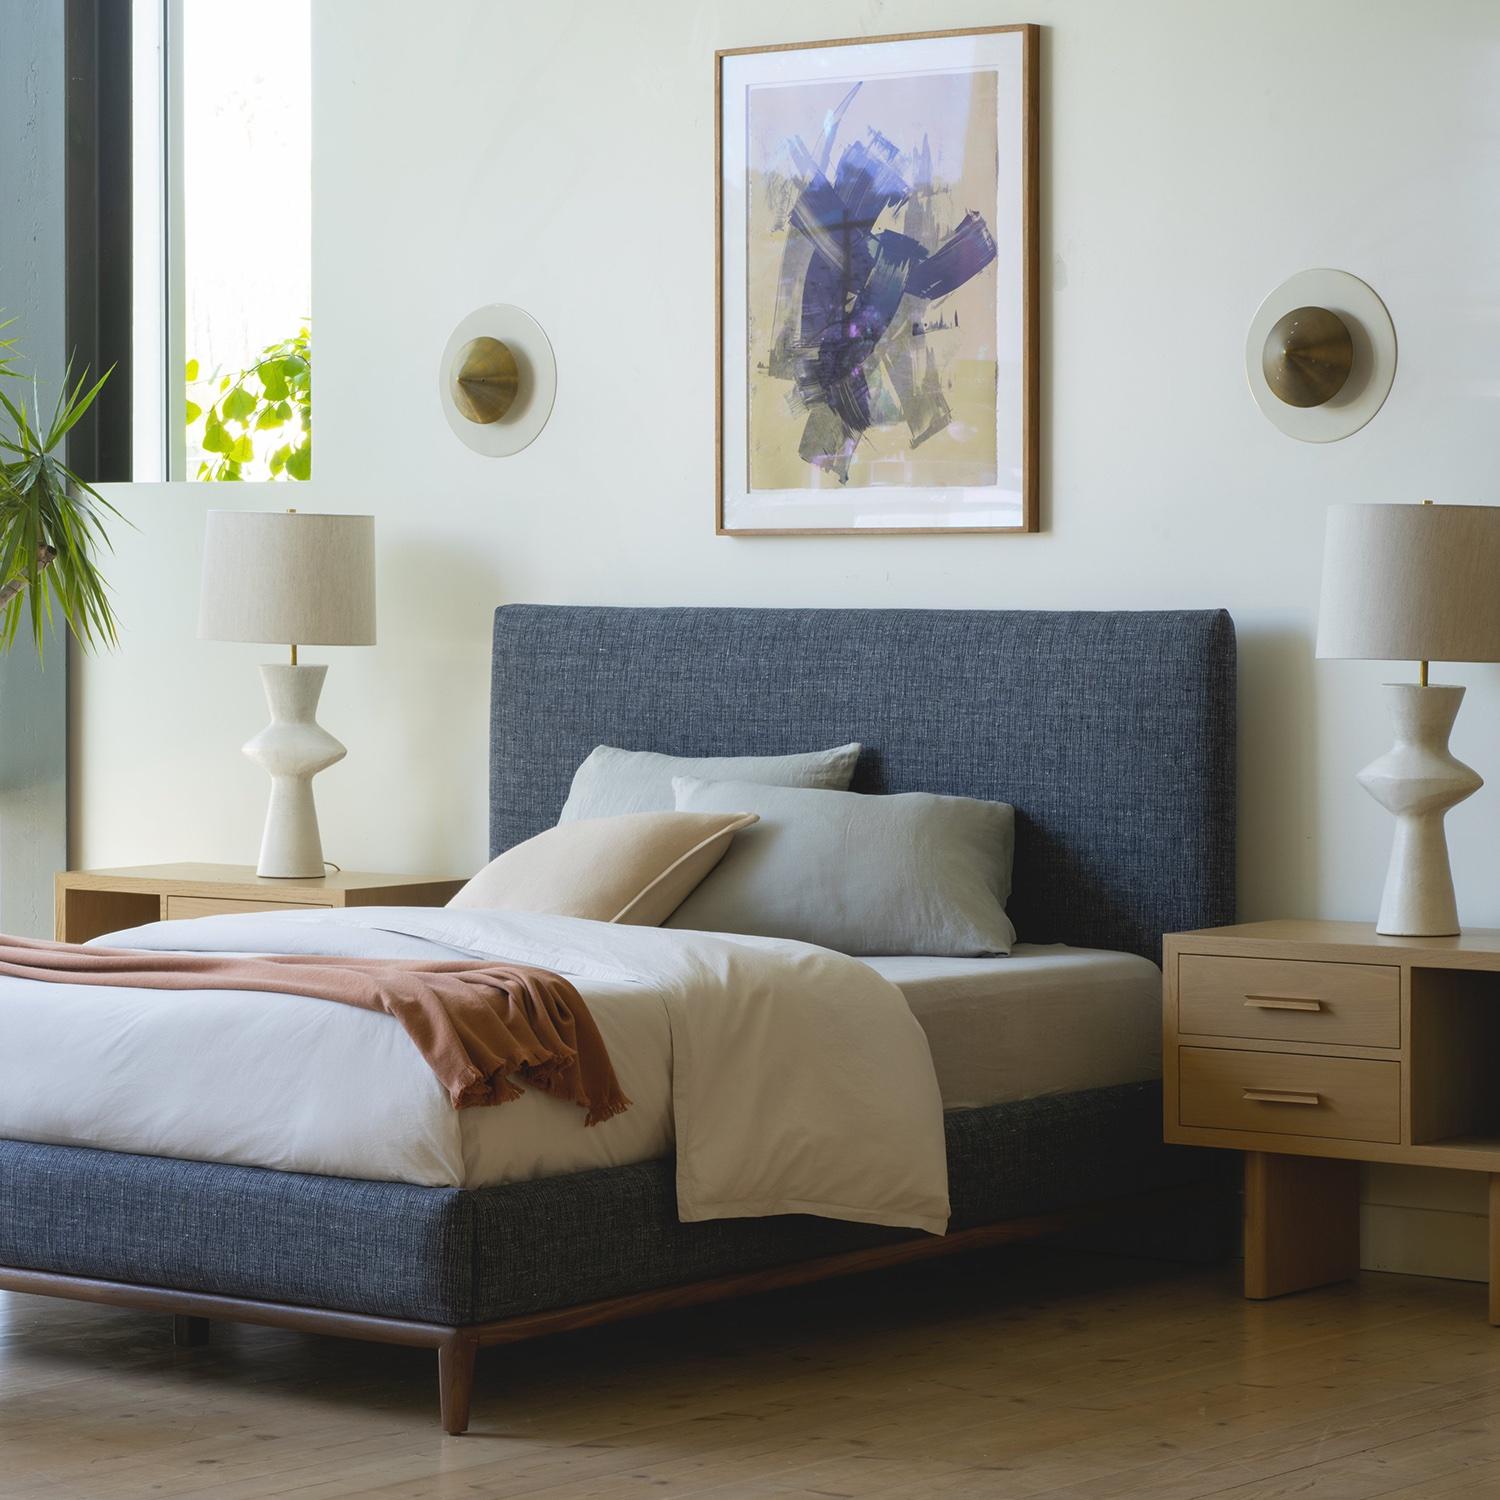 Das Bett Montebello ist ein klares und klassisches Möbelstück mit einem gepolsterten Kopfteil und Seitengittern. Der Sockel ist aus gedrechseltem, massivem amerikanischem Nussbaum oder Weißeiche gefertigt. 

Die Lawson-Fenning Collection'S wird in